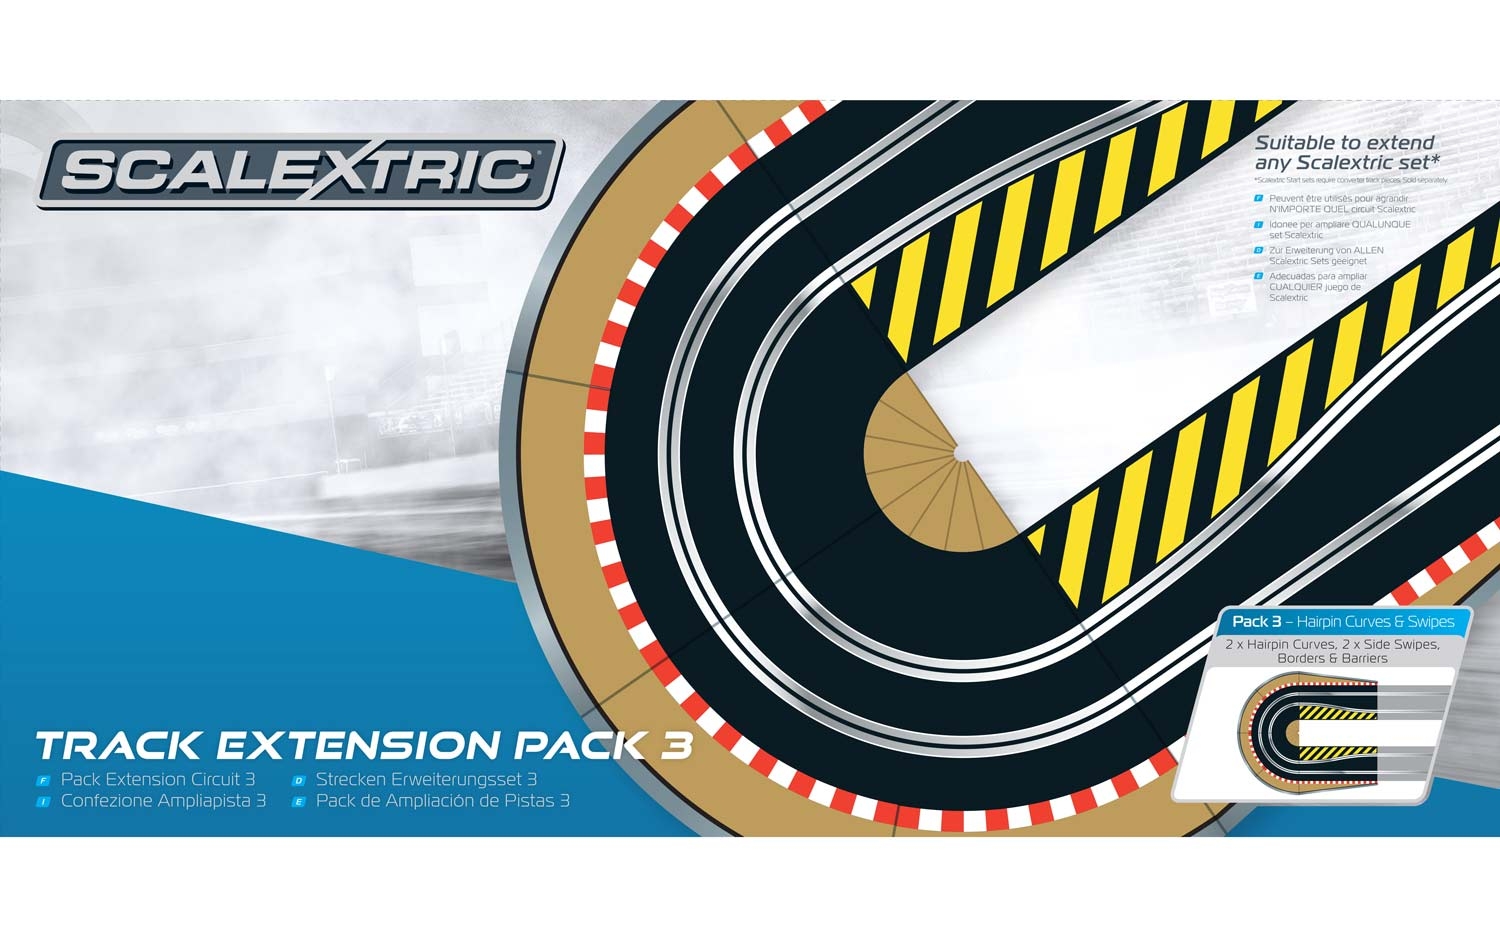 Scalextric Track Extension Pack 3 épingle à cheveux courbes côté chassant Bordures et barrières 